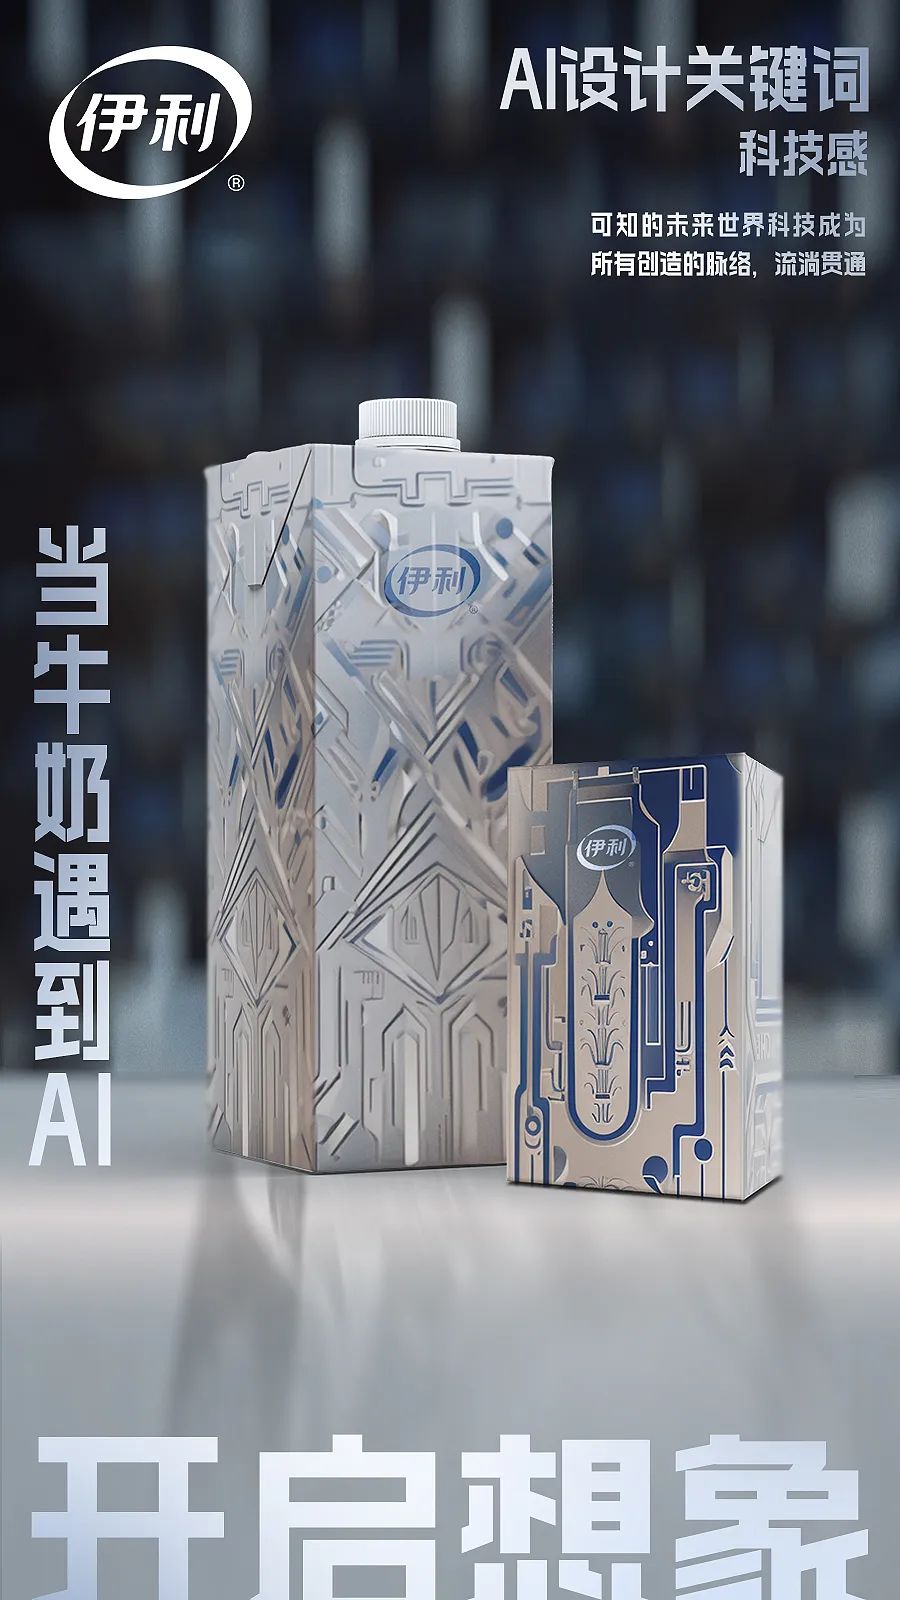 AI设计了牛奶包装